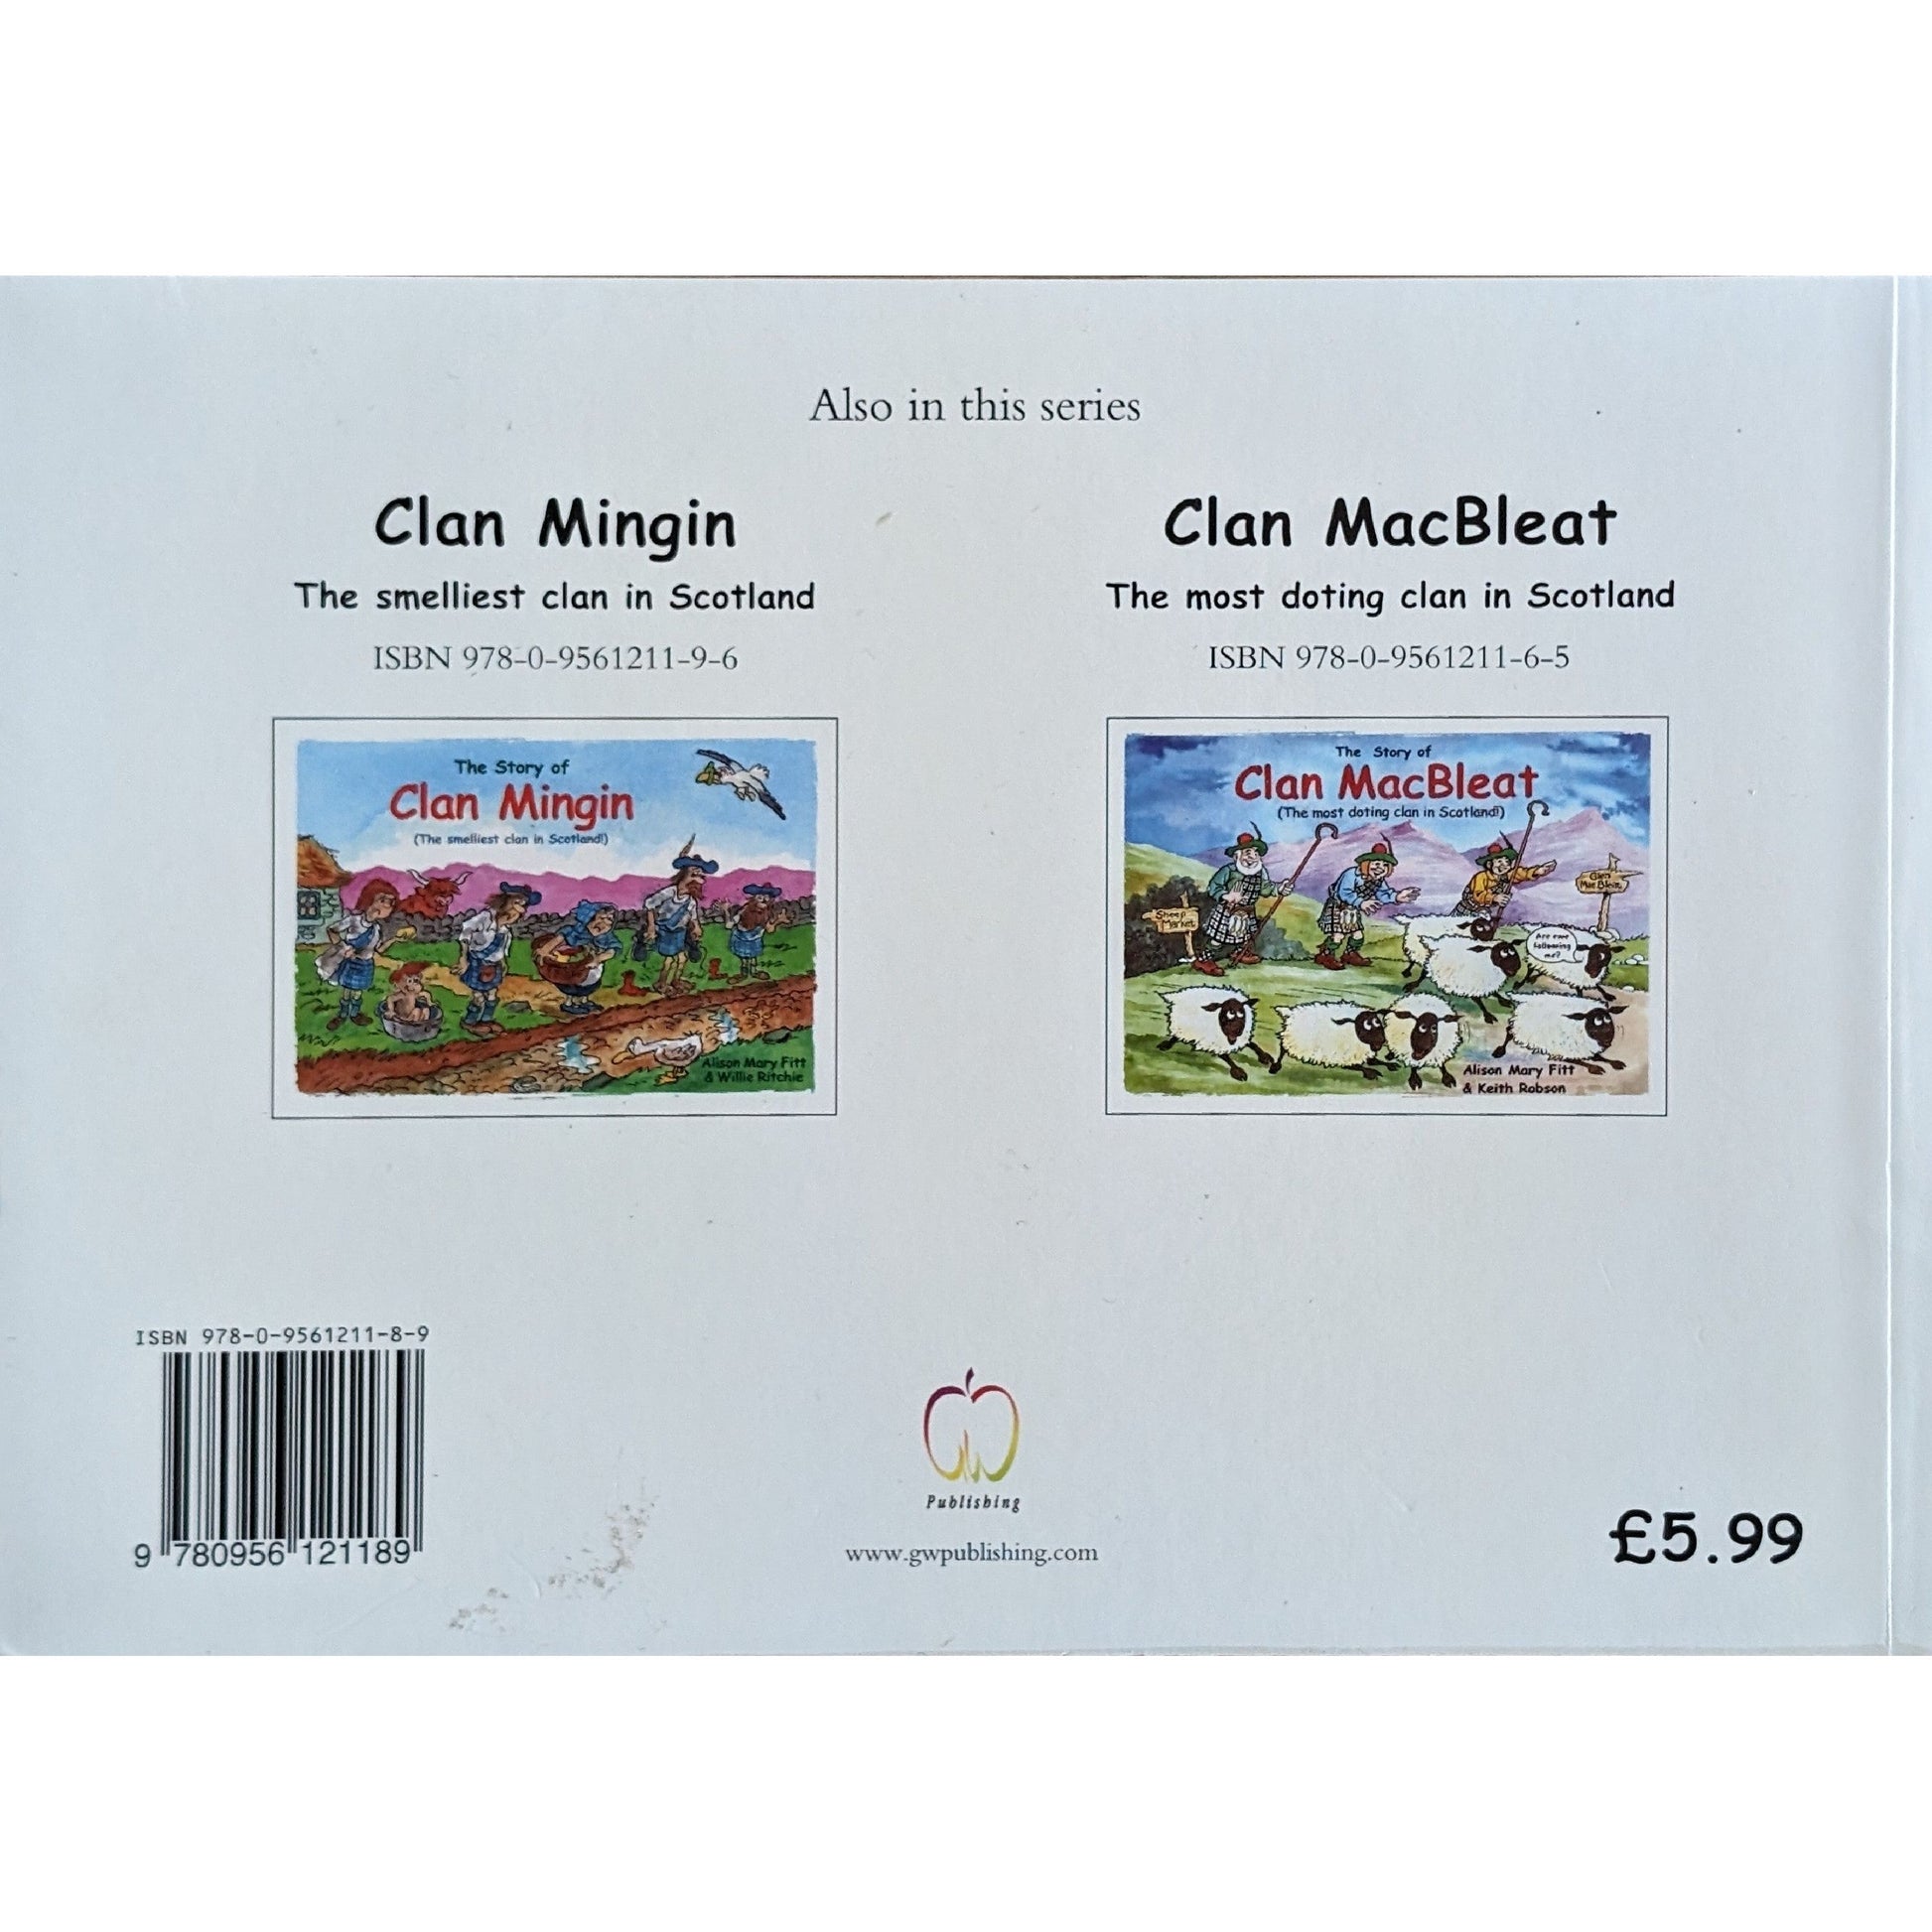 The Story of Clan McWee. Brukte bøker av Alison Mary Fitt og Willie RItchie